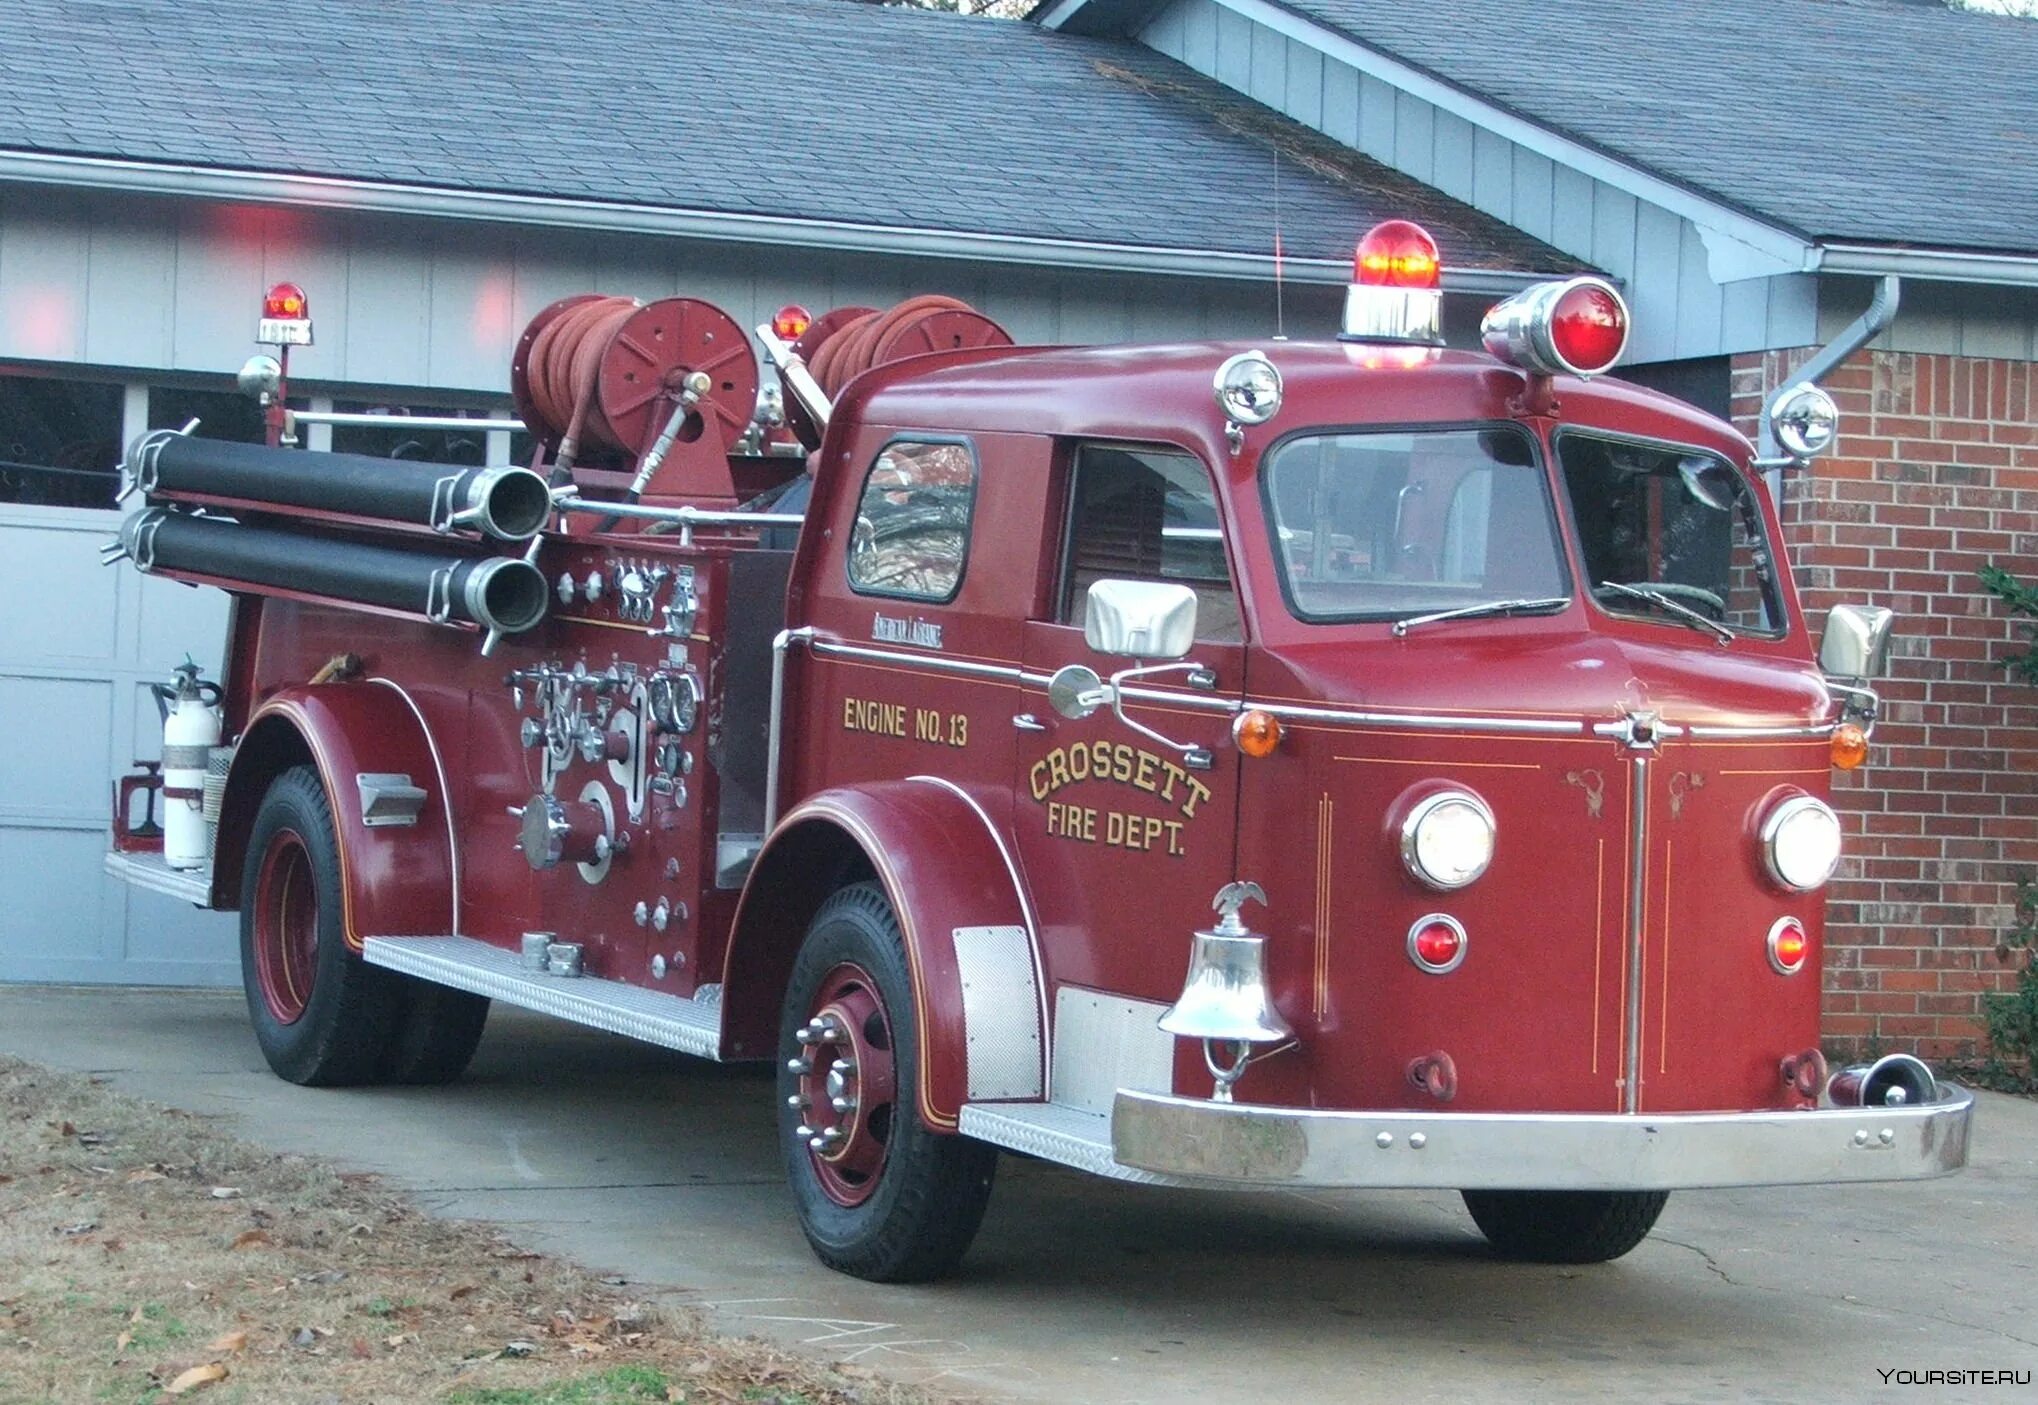 Машина "Fire Truck" пожарная, 49450. American LAFRANCE 700. ЗИЛ 130 Firetruck. АНР-40 130.